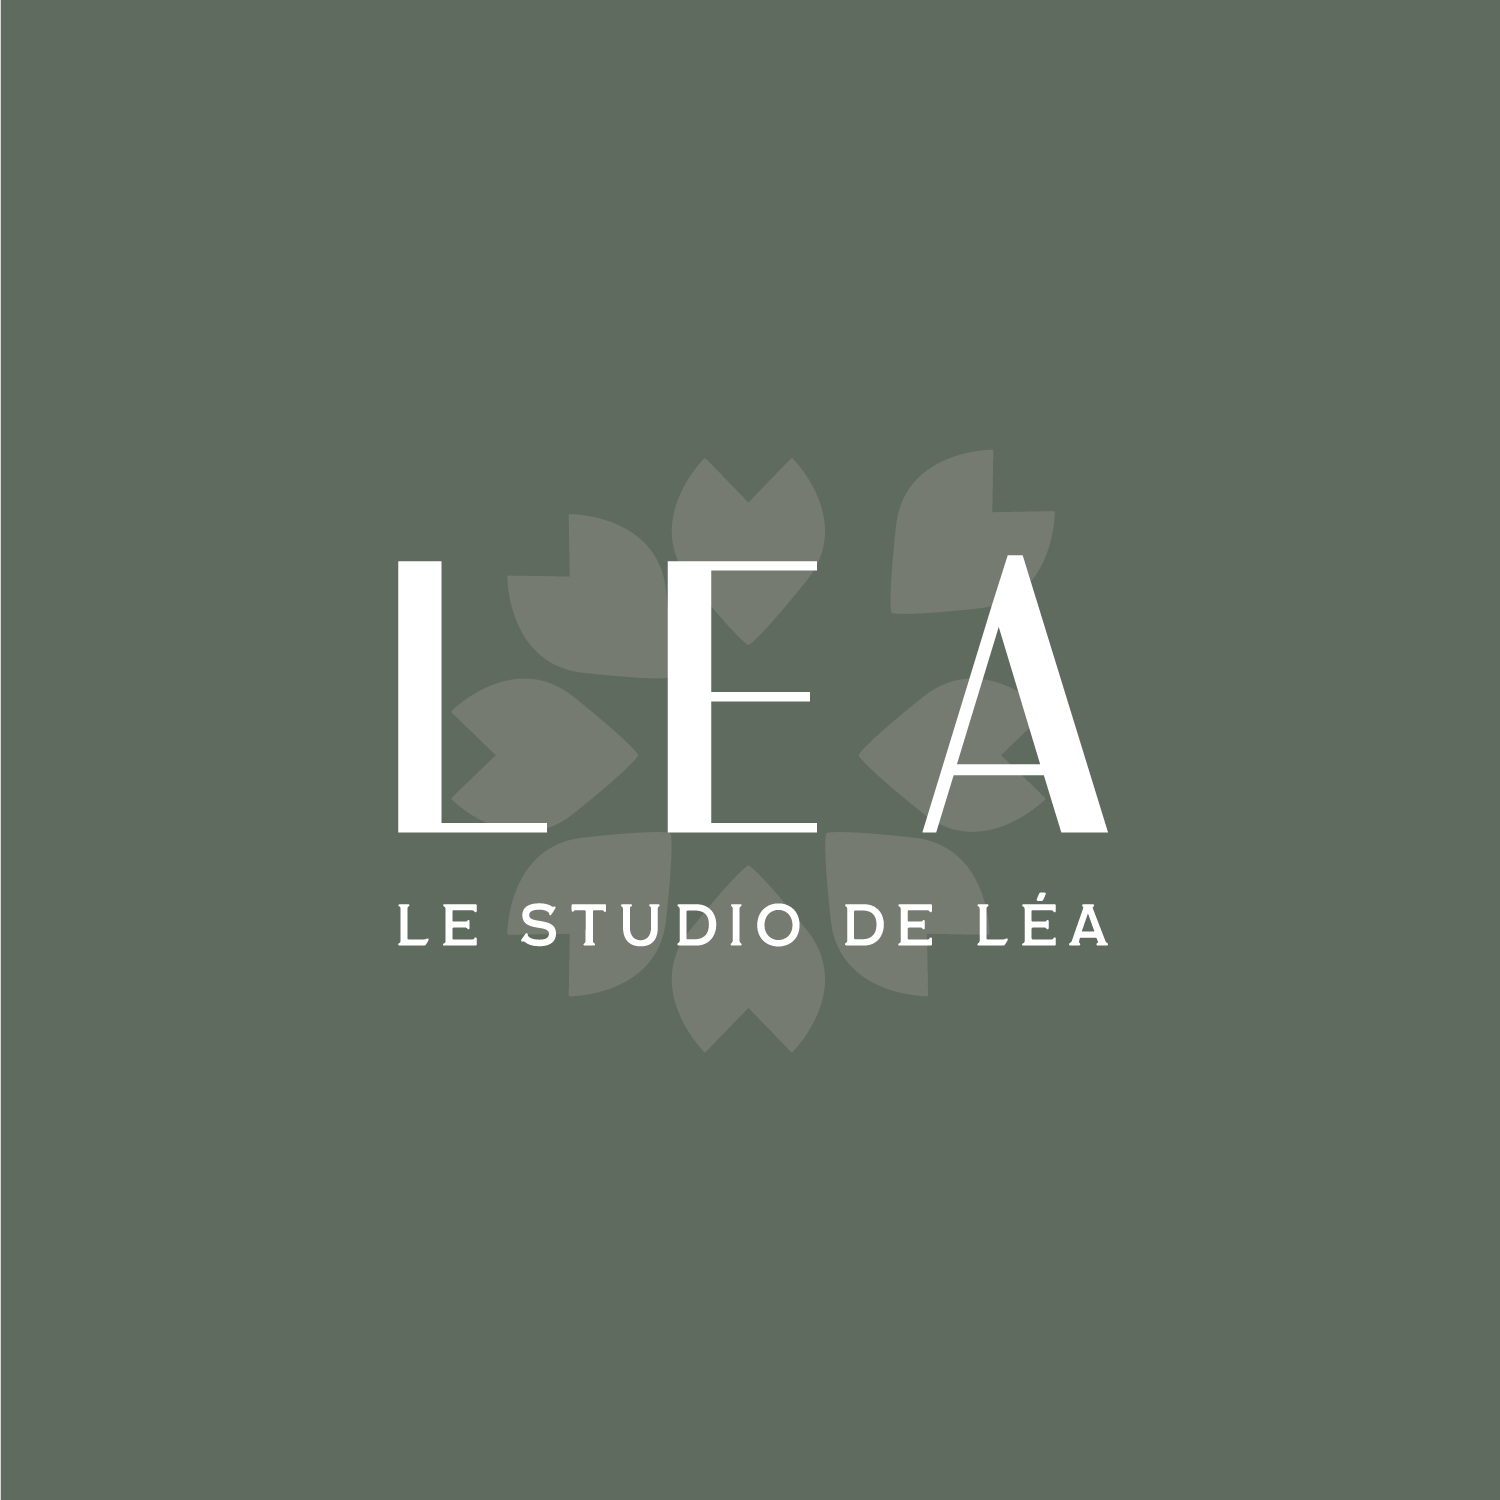 logo-studiolea-institutbeauté-03-studiopolette-graphiste-webdesigner-freelance-strasbourg